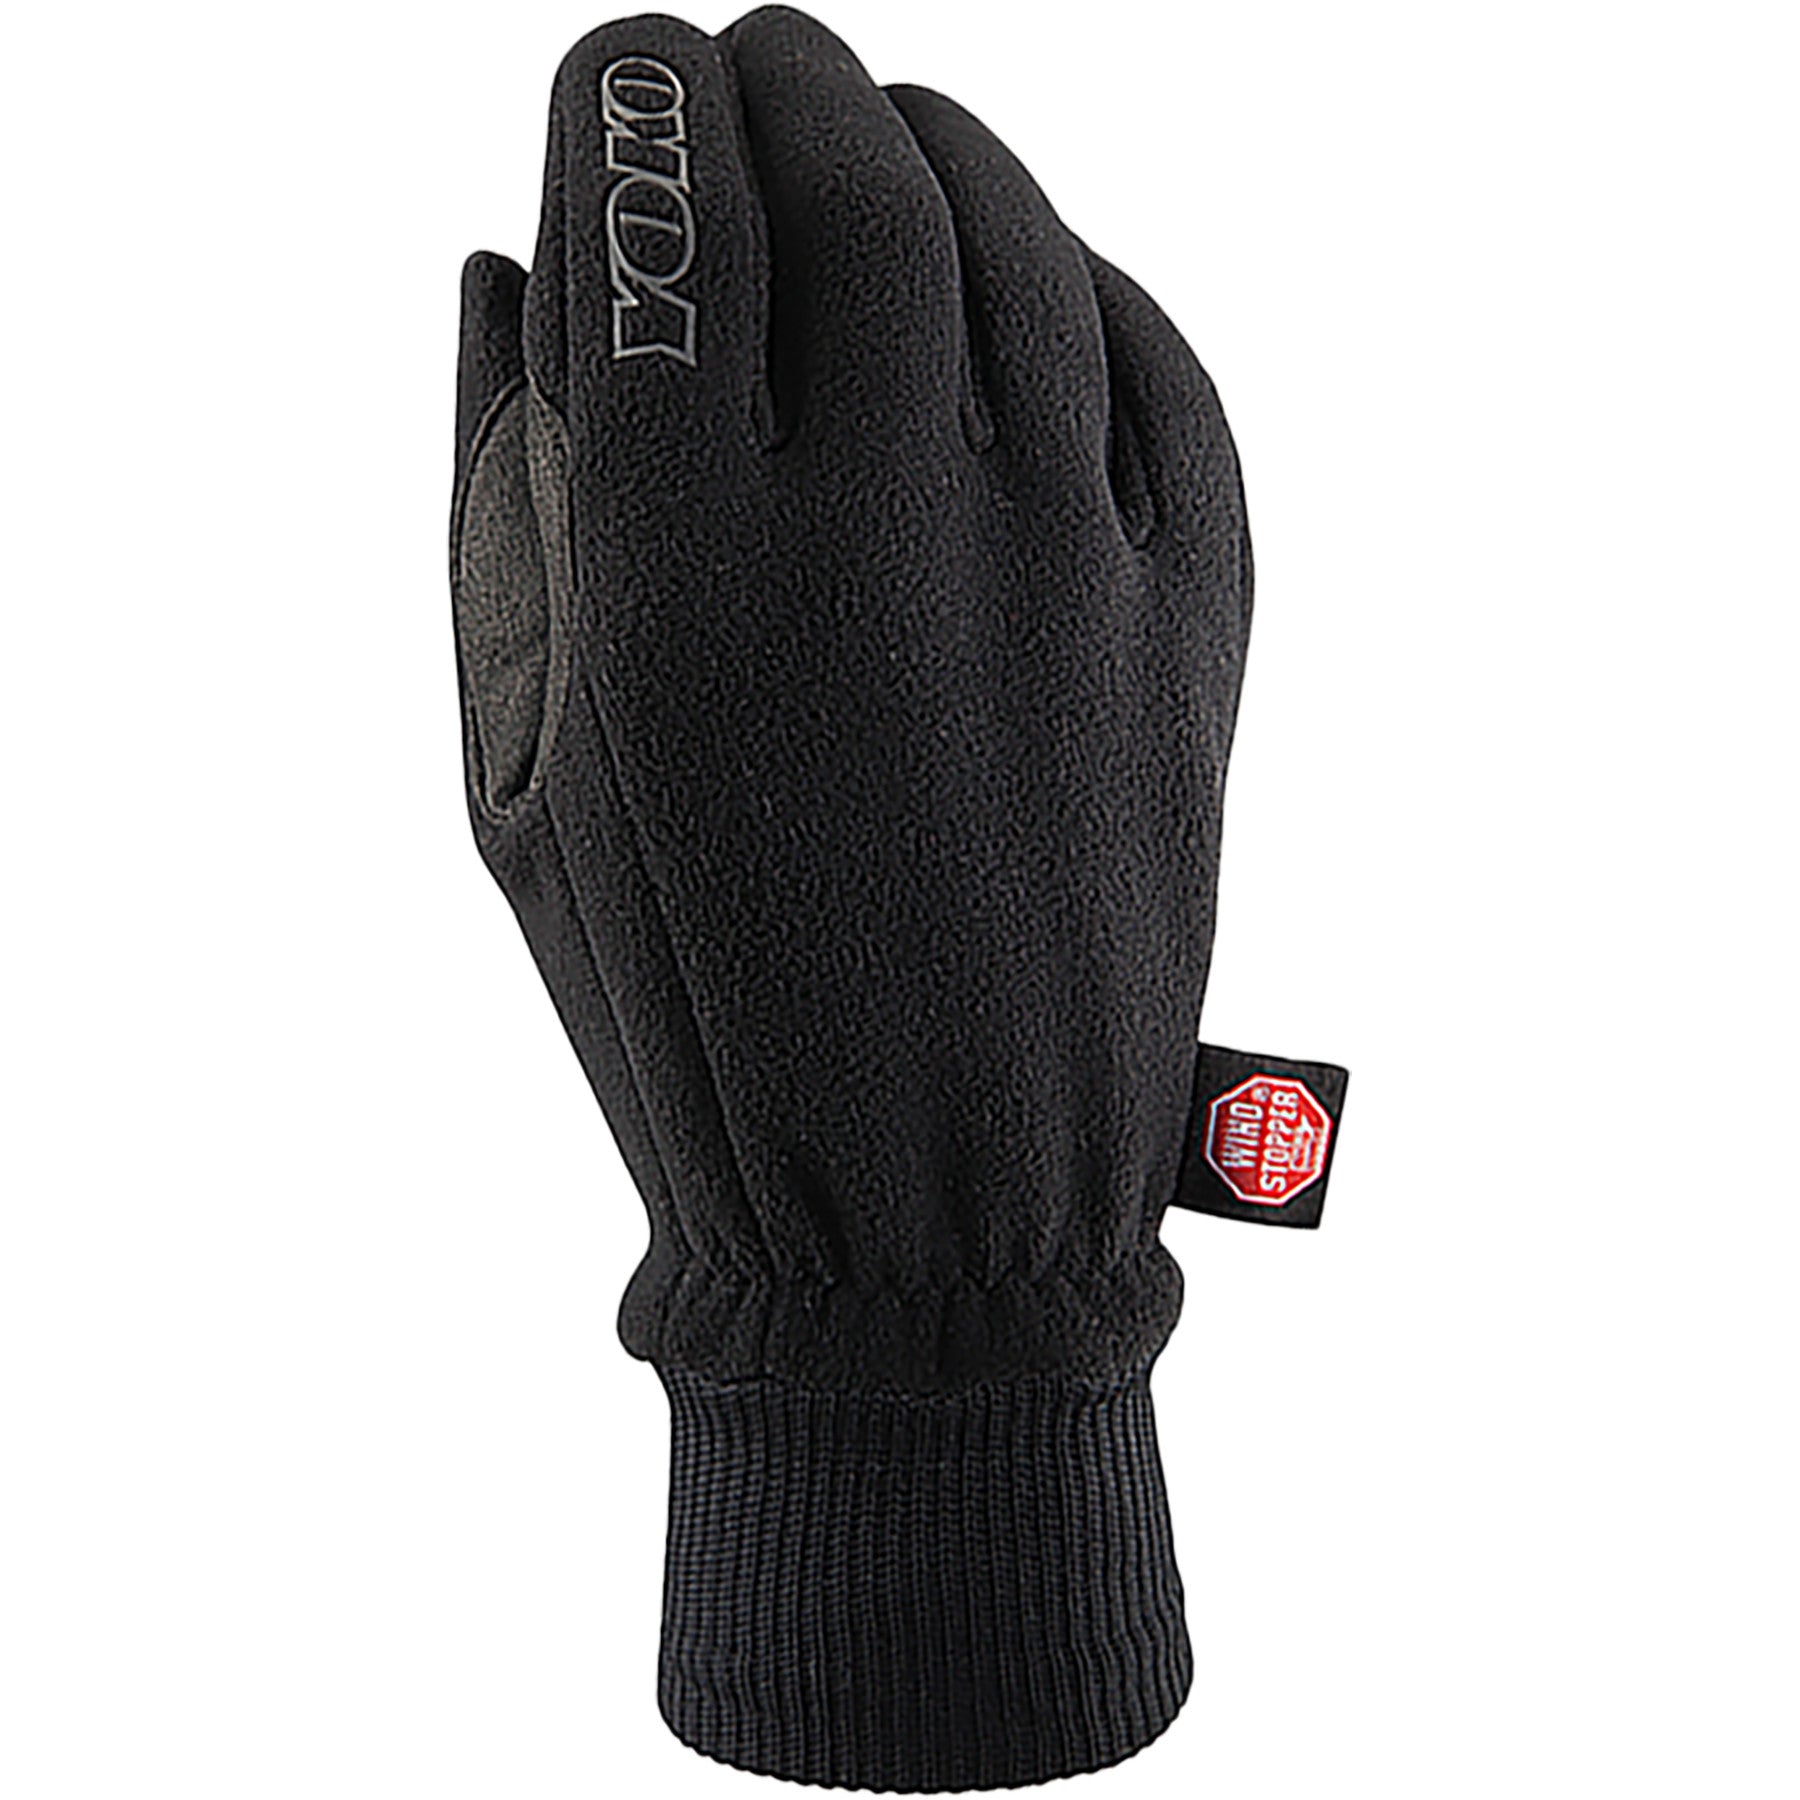 Yoko WS MF270 glove